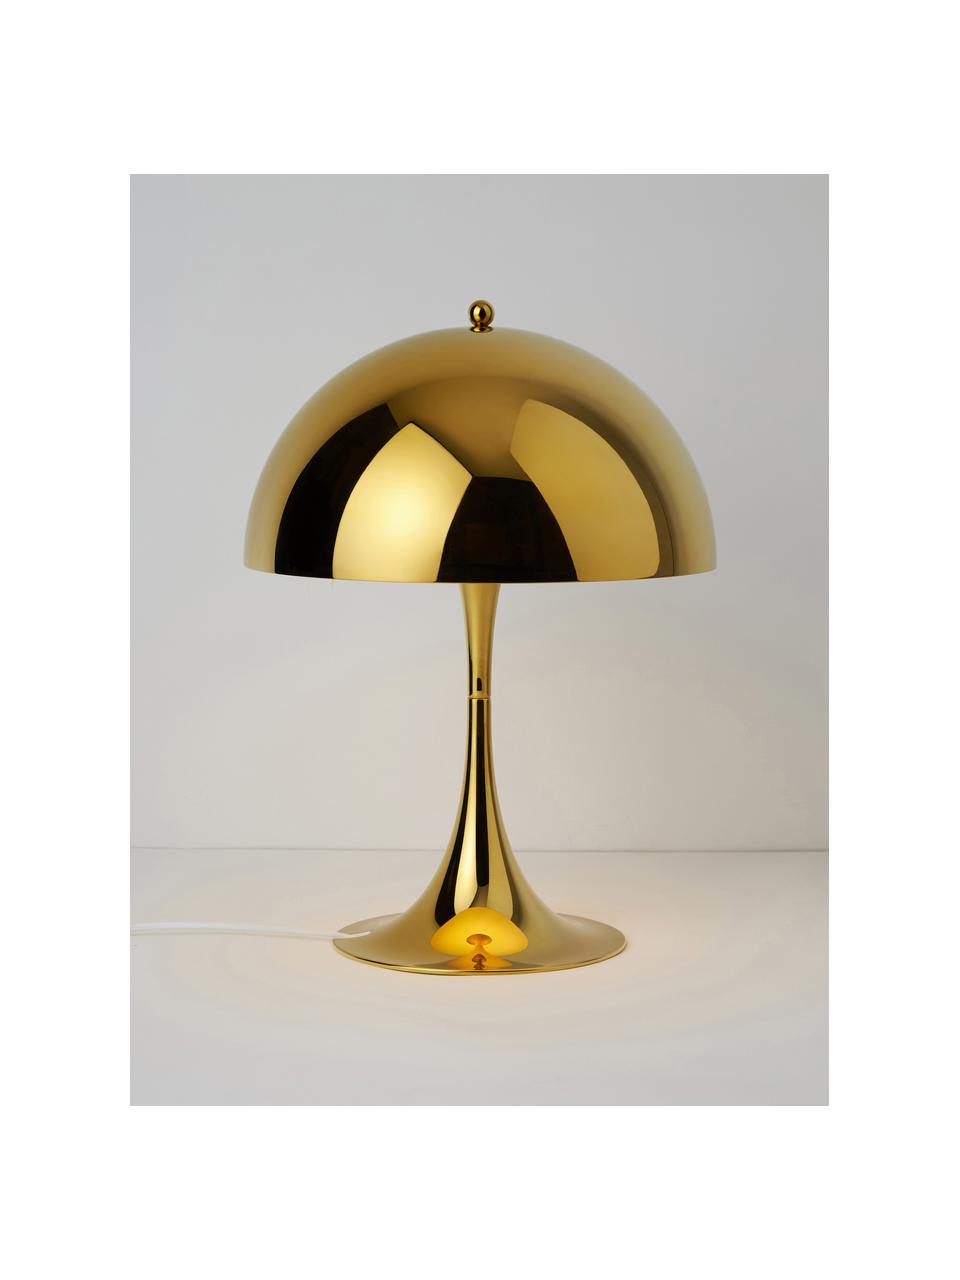 Lampa stołowa Panthella, W 44 cm, Stelaż: aluminium powlekane, Stal w odcieniach złotego, Ø 32 x 44 cm